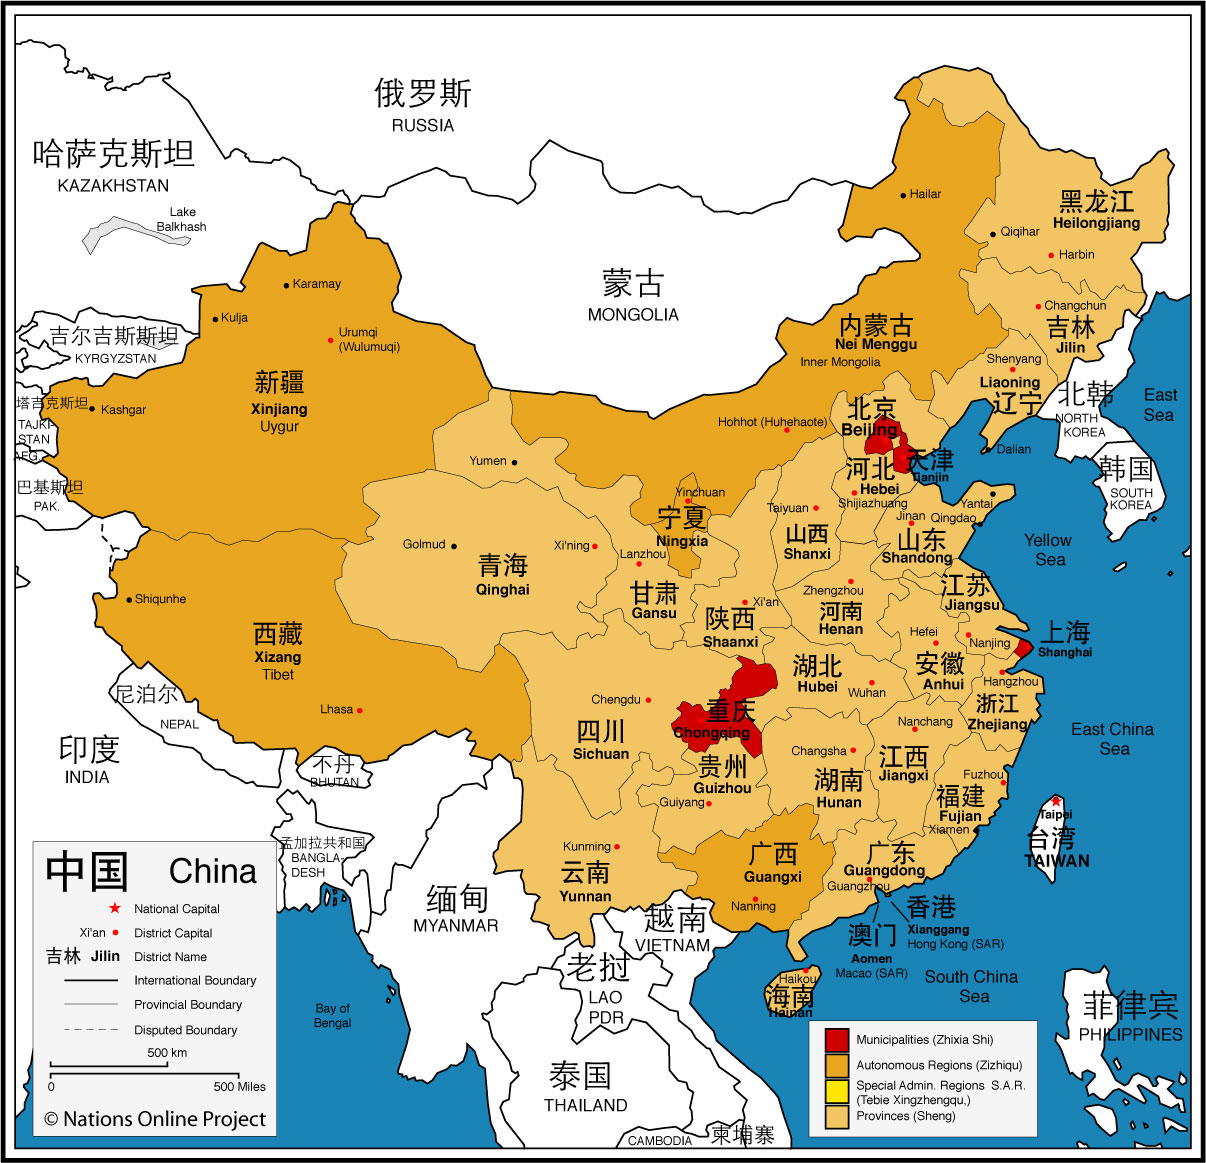 Карта китая в китайских учебниках